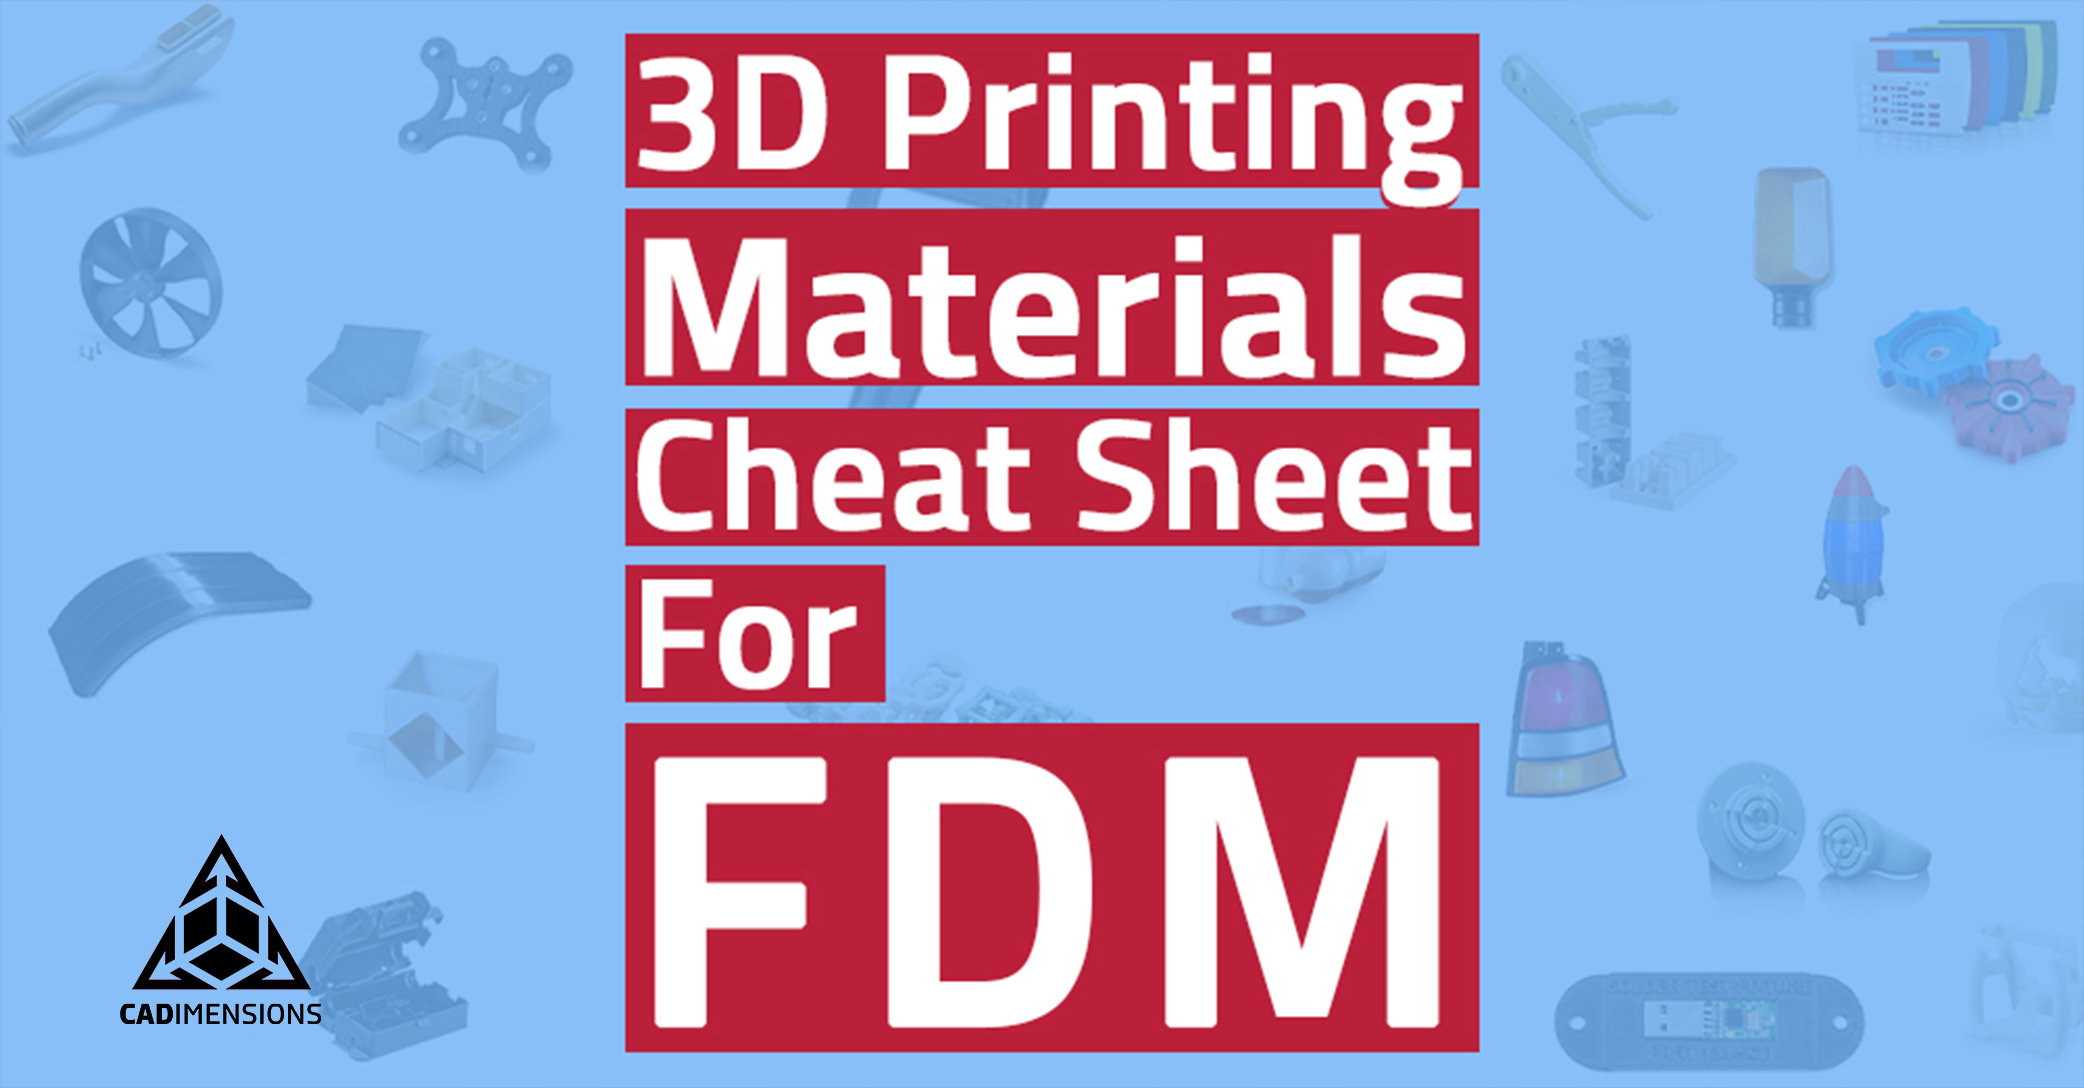 FDM 3D Printing Materials Cheat Sheet